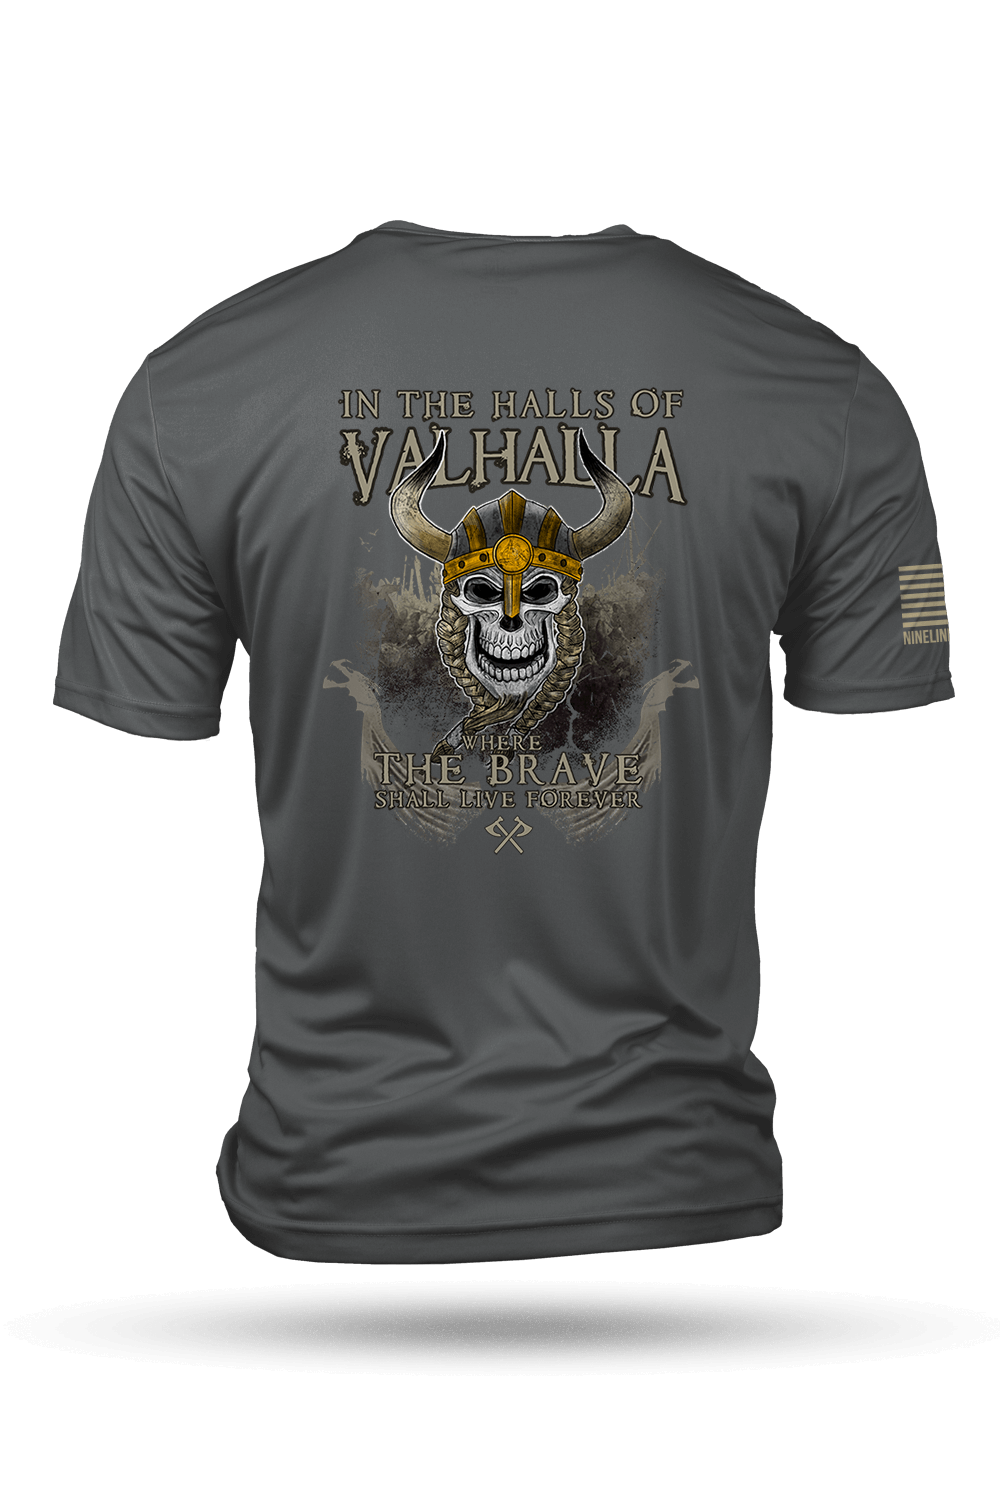 Till Valhalla Athletic Wicking Shirt – Nine Line Apparel